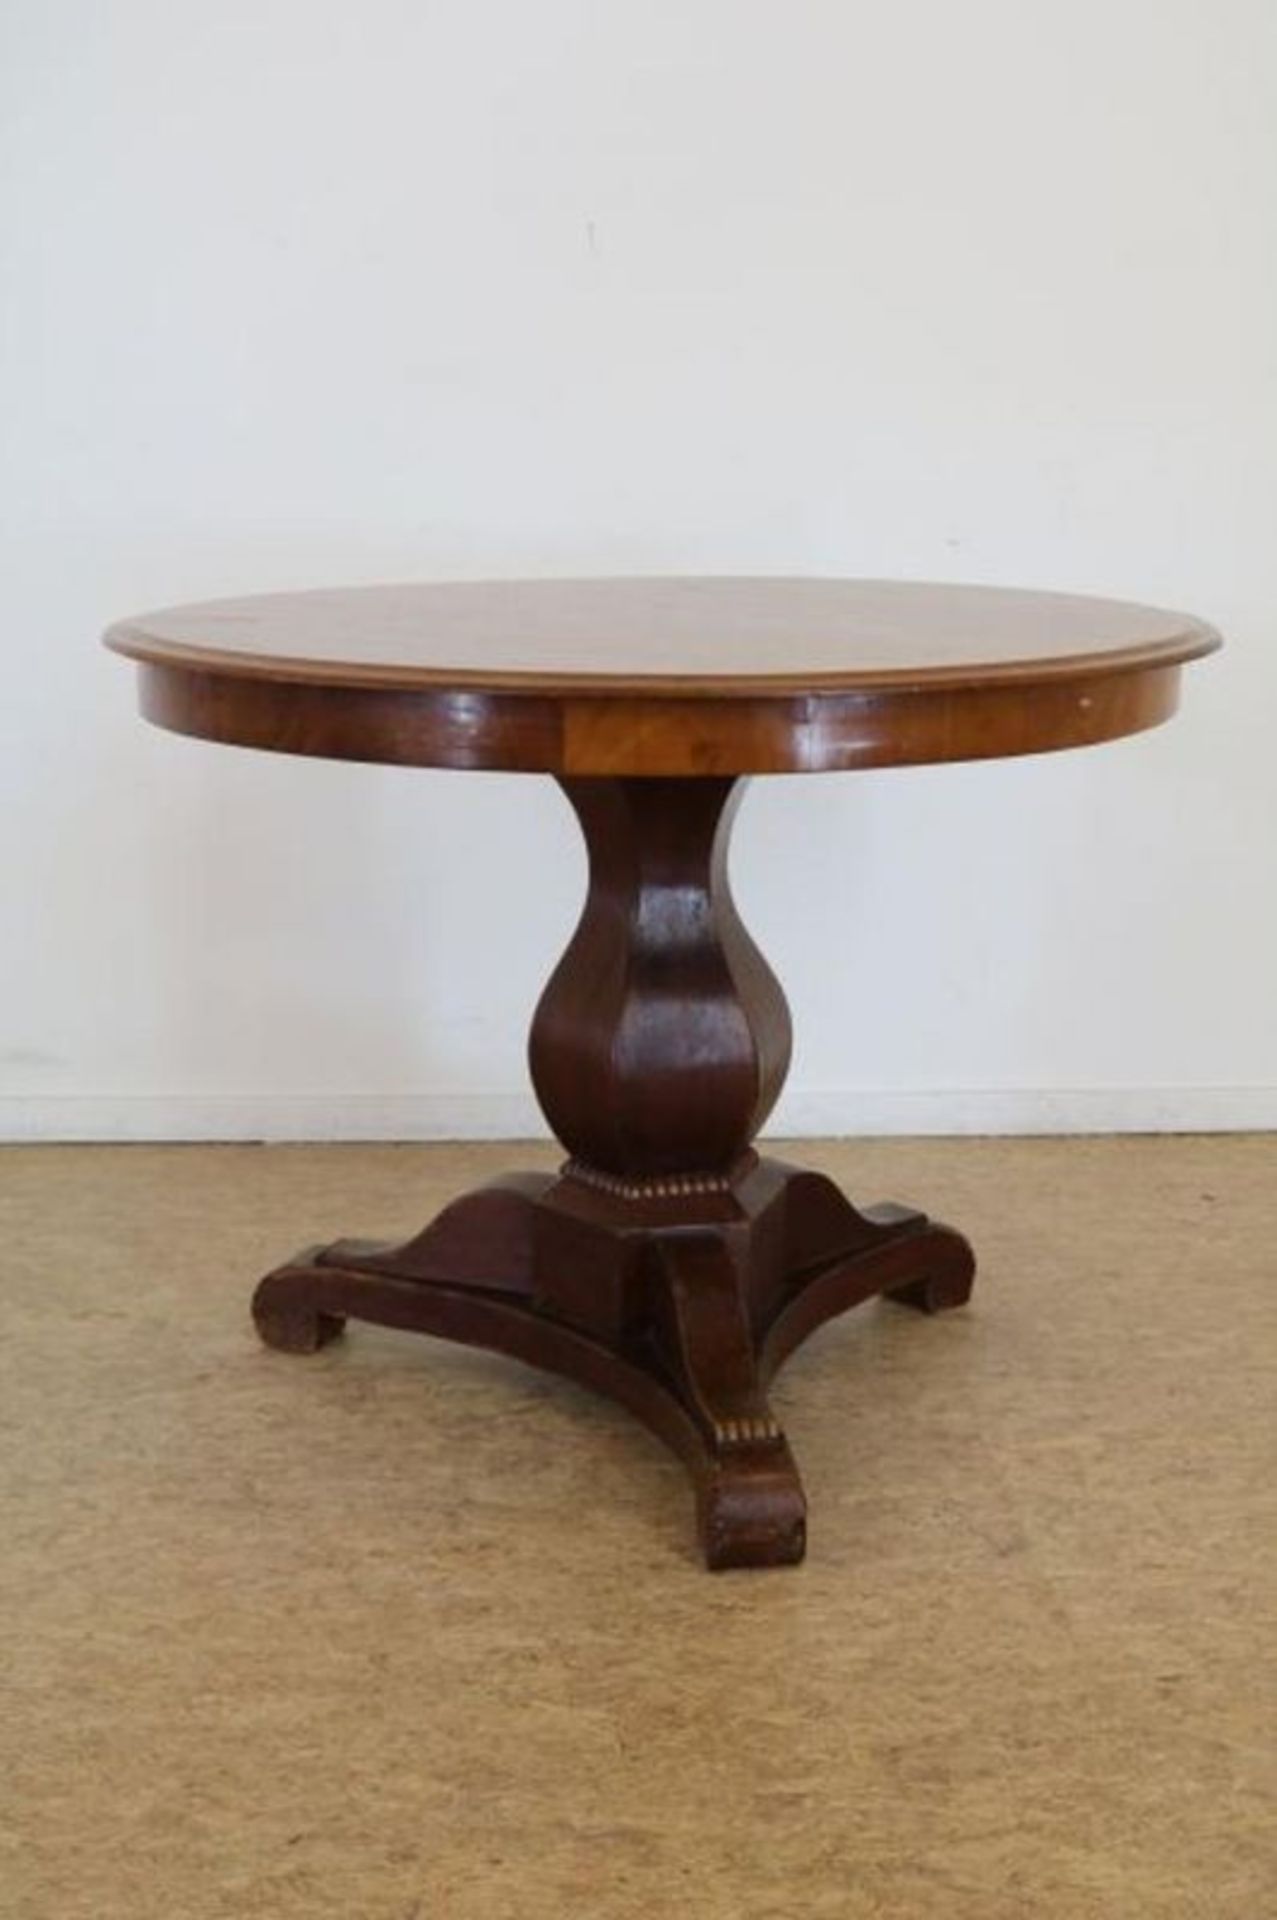 Mahonie Biedermeier tafel op vaaspoot uitlopend in 3-sprant, 19e eeuw, h. 75, diam. 100 cm.